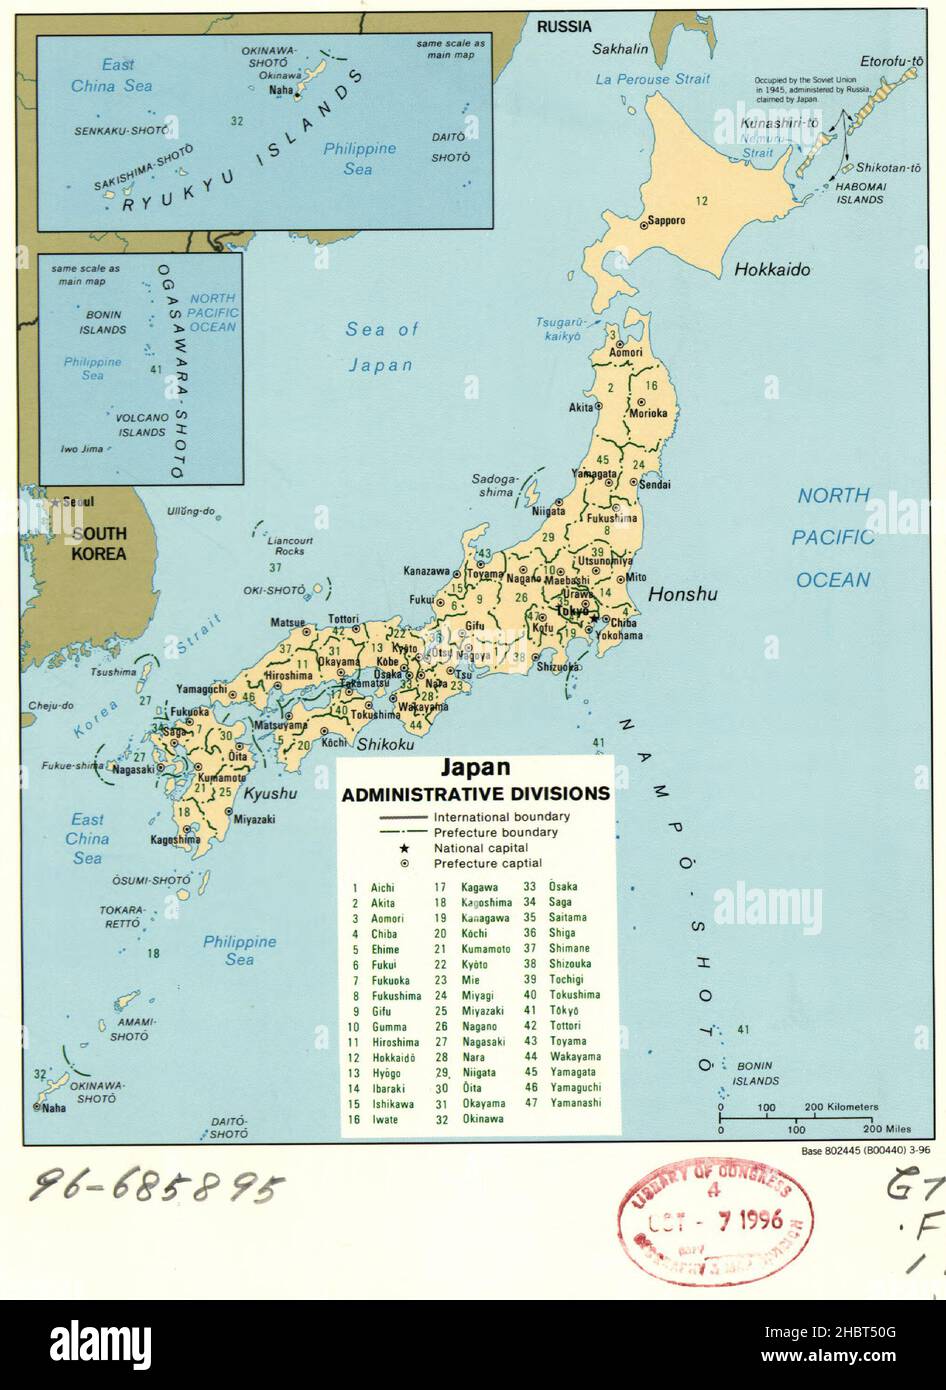 Mappa delle divisioni amministrative del Giappone - Inset: Isole Ryukyu -- Ogasawara-shoto ca. 1996 Foto Stock